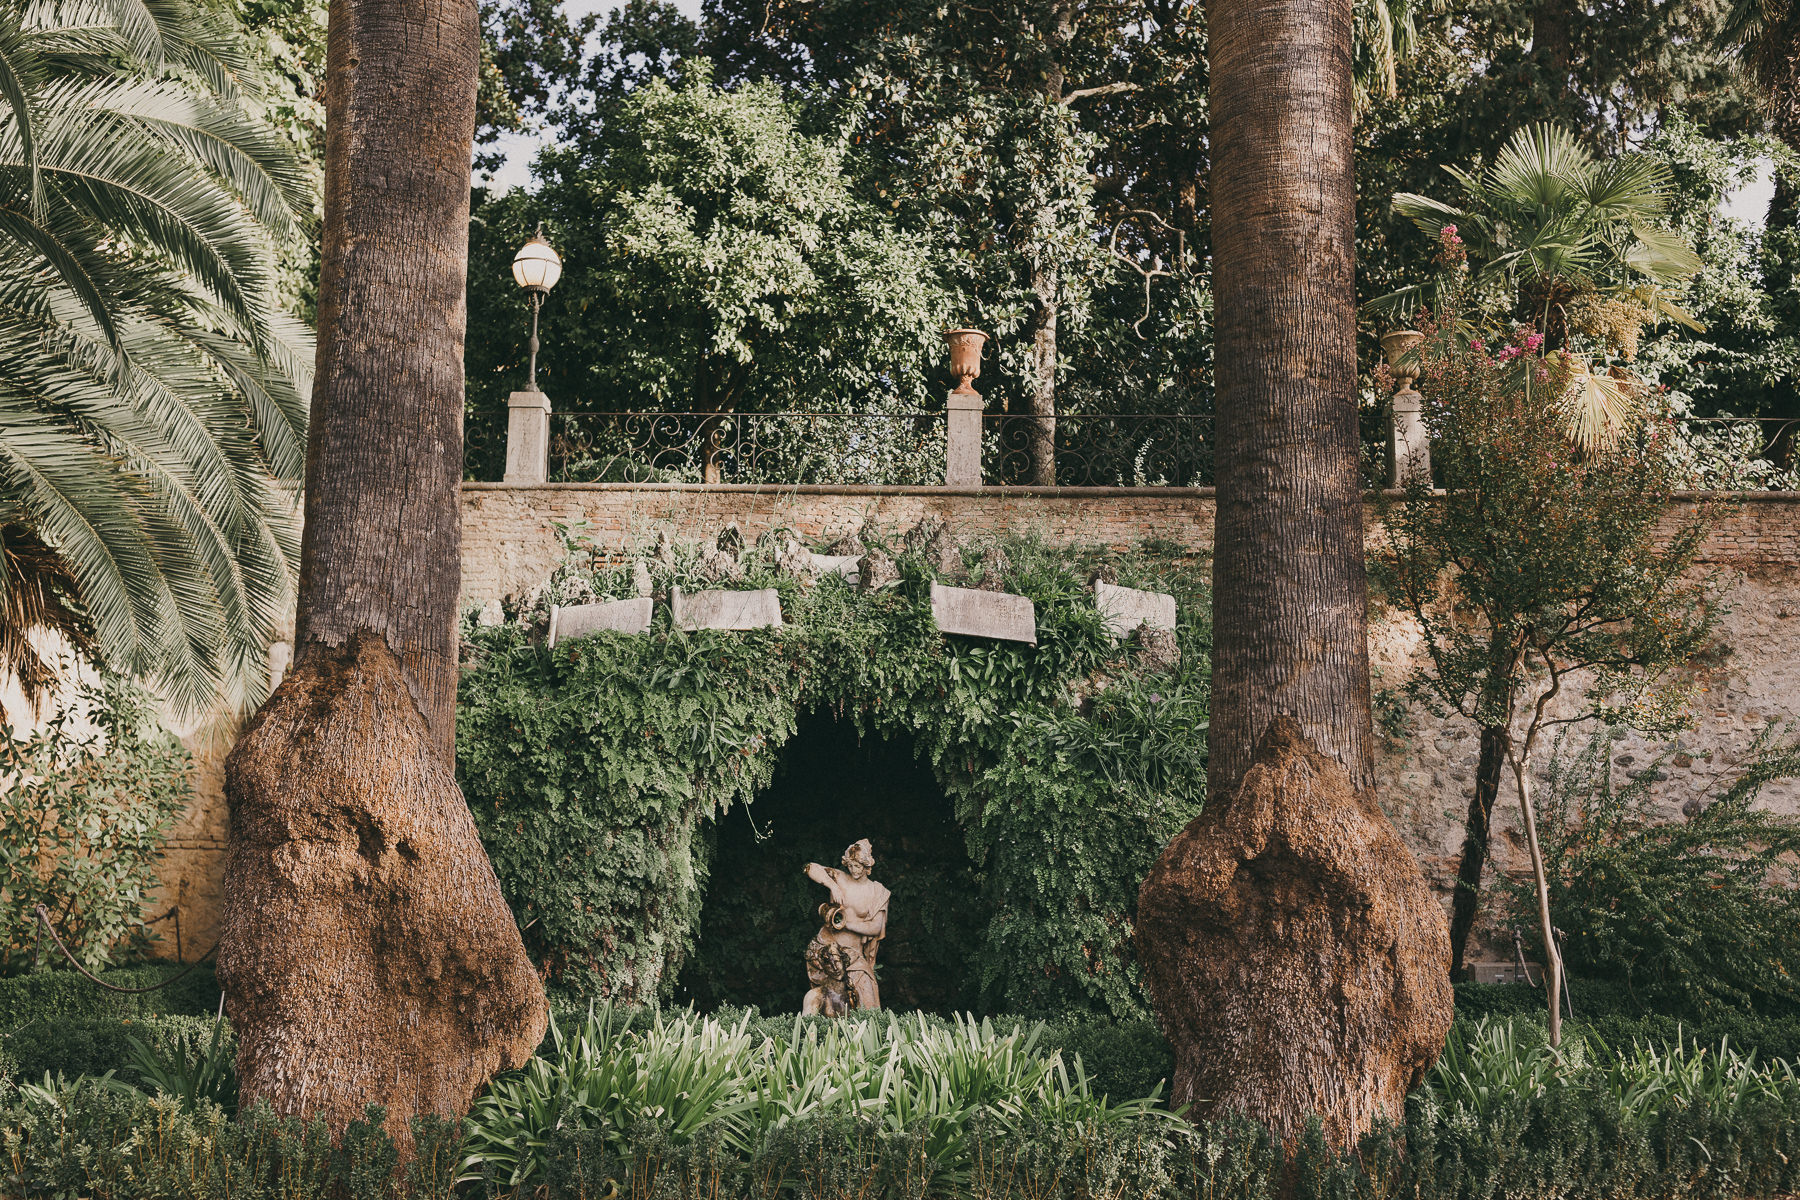 Fuente romana ubicada en un jardín llamado Carmen de los mártires, conocido por su imponente y vegetación. fotografía de boda por Love Wanderers.